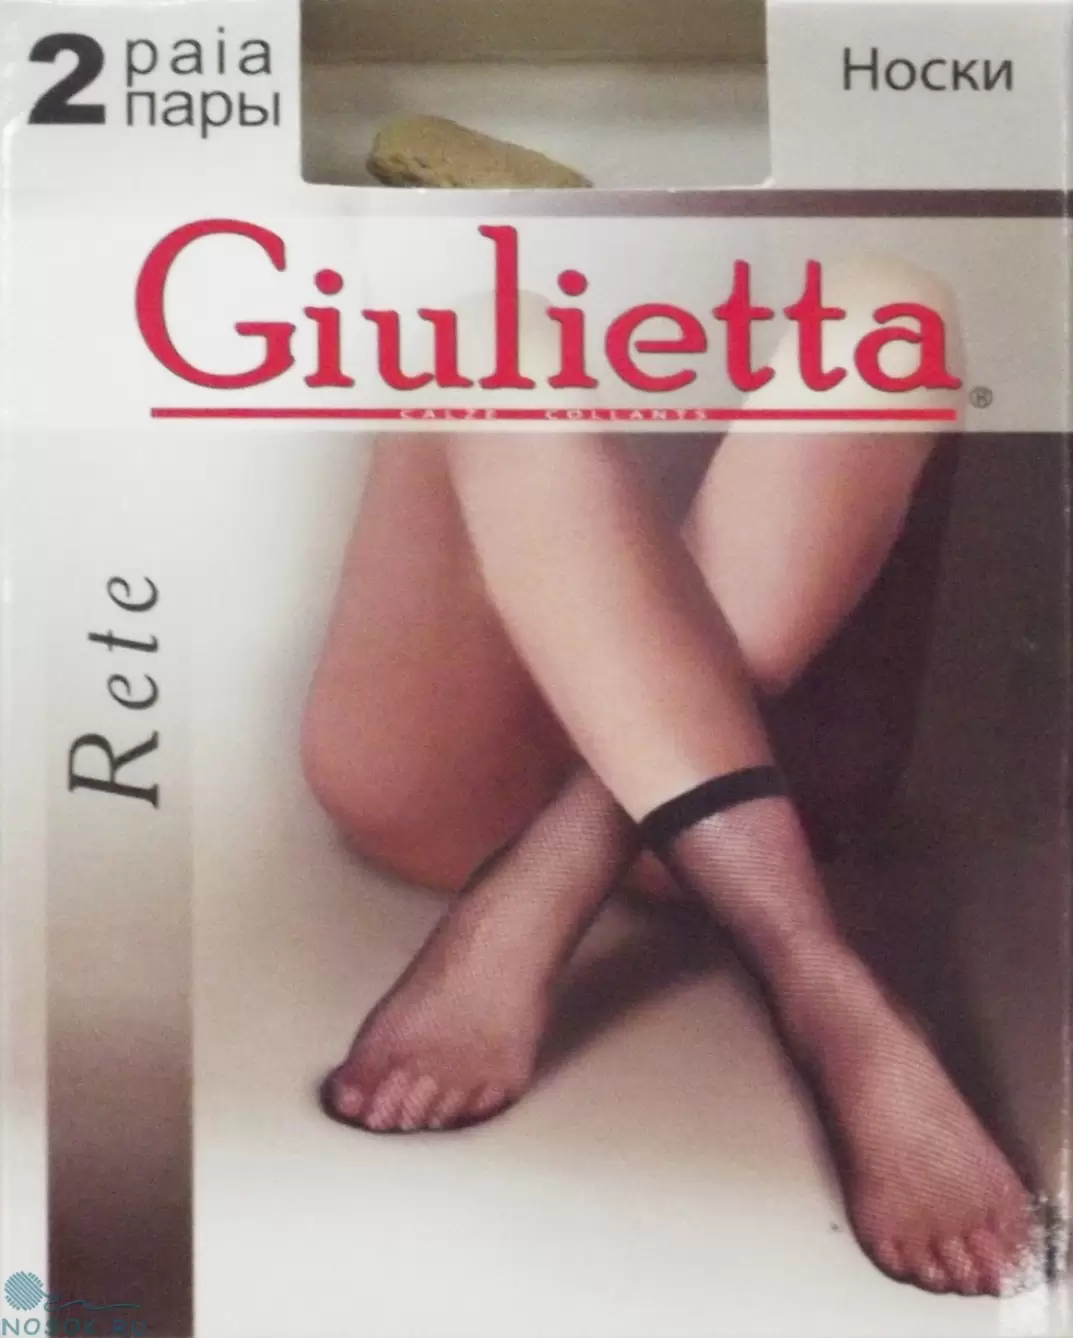 Giulietta RETE 20, носки (изображение 1)